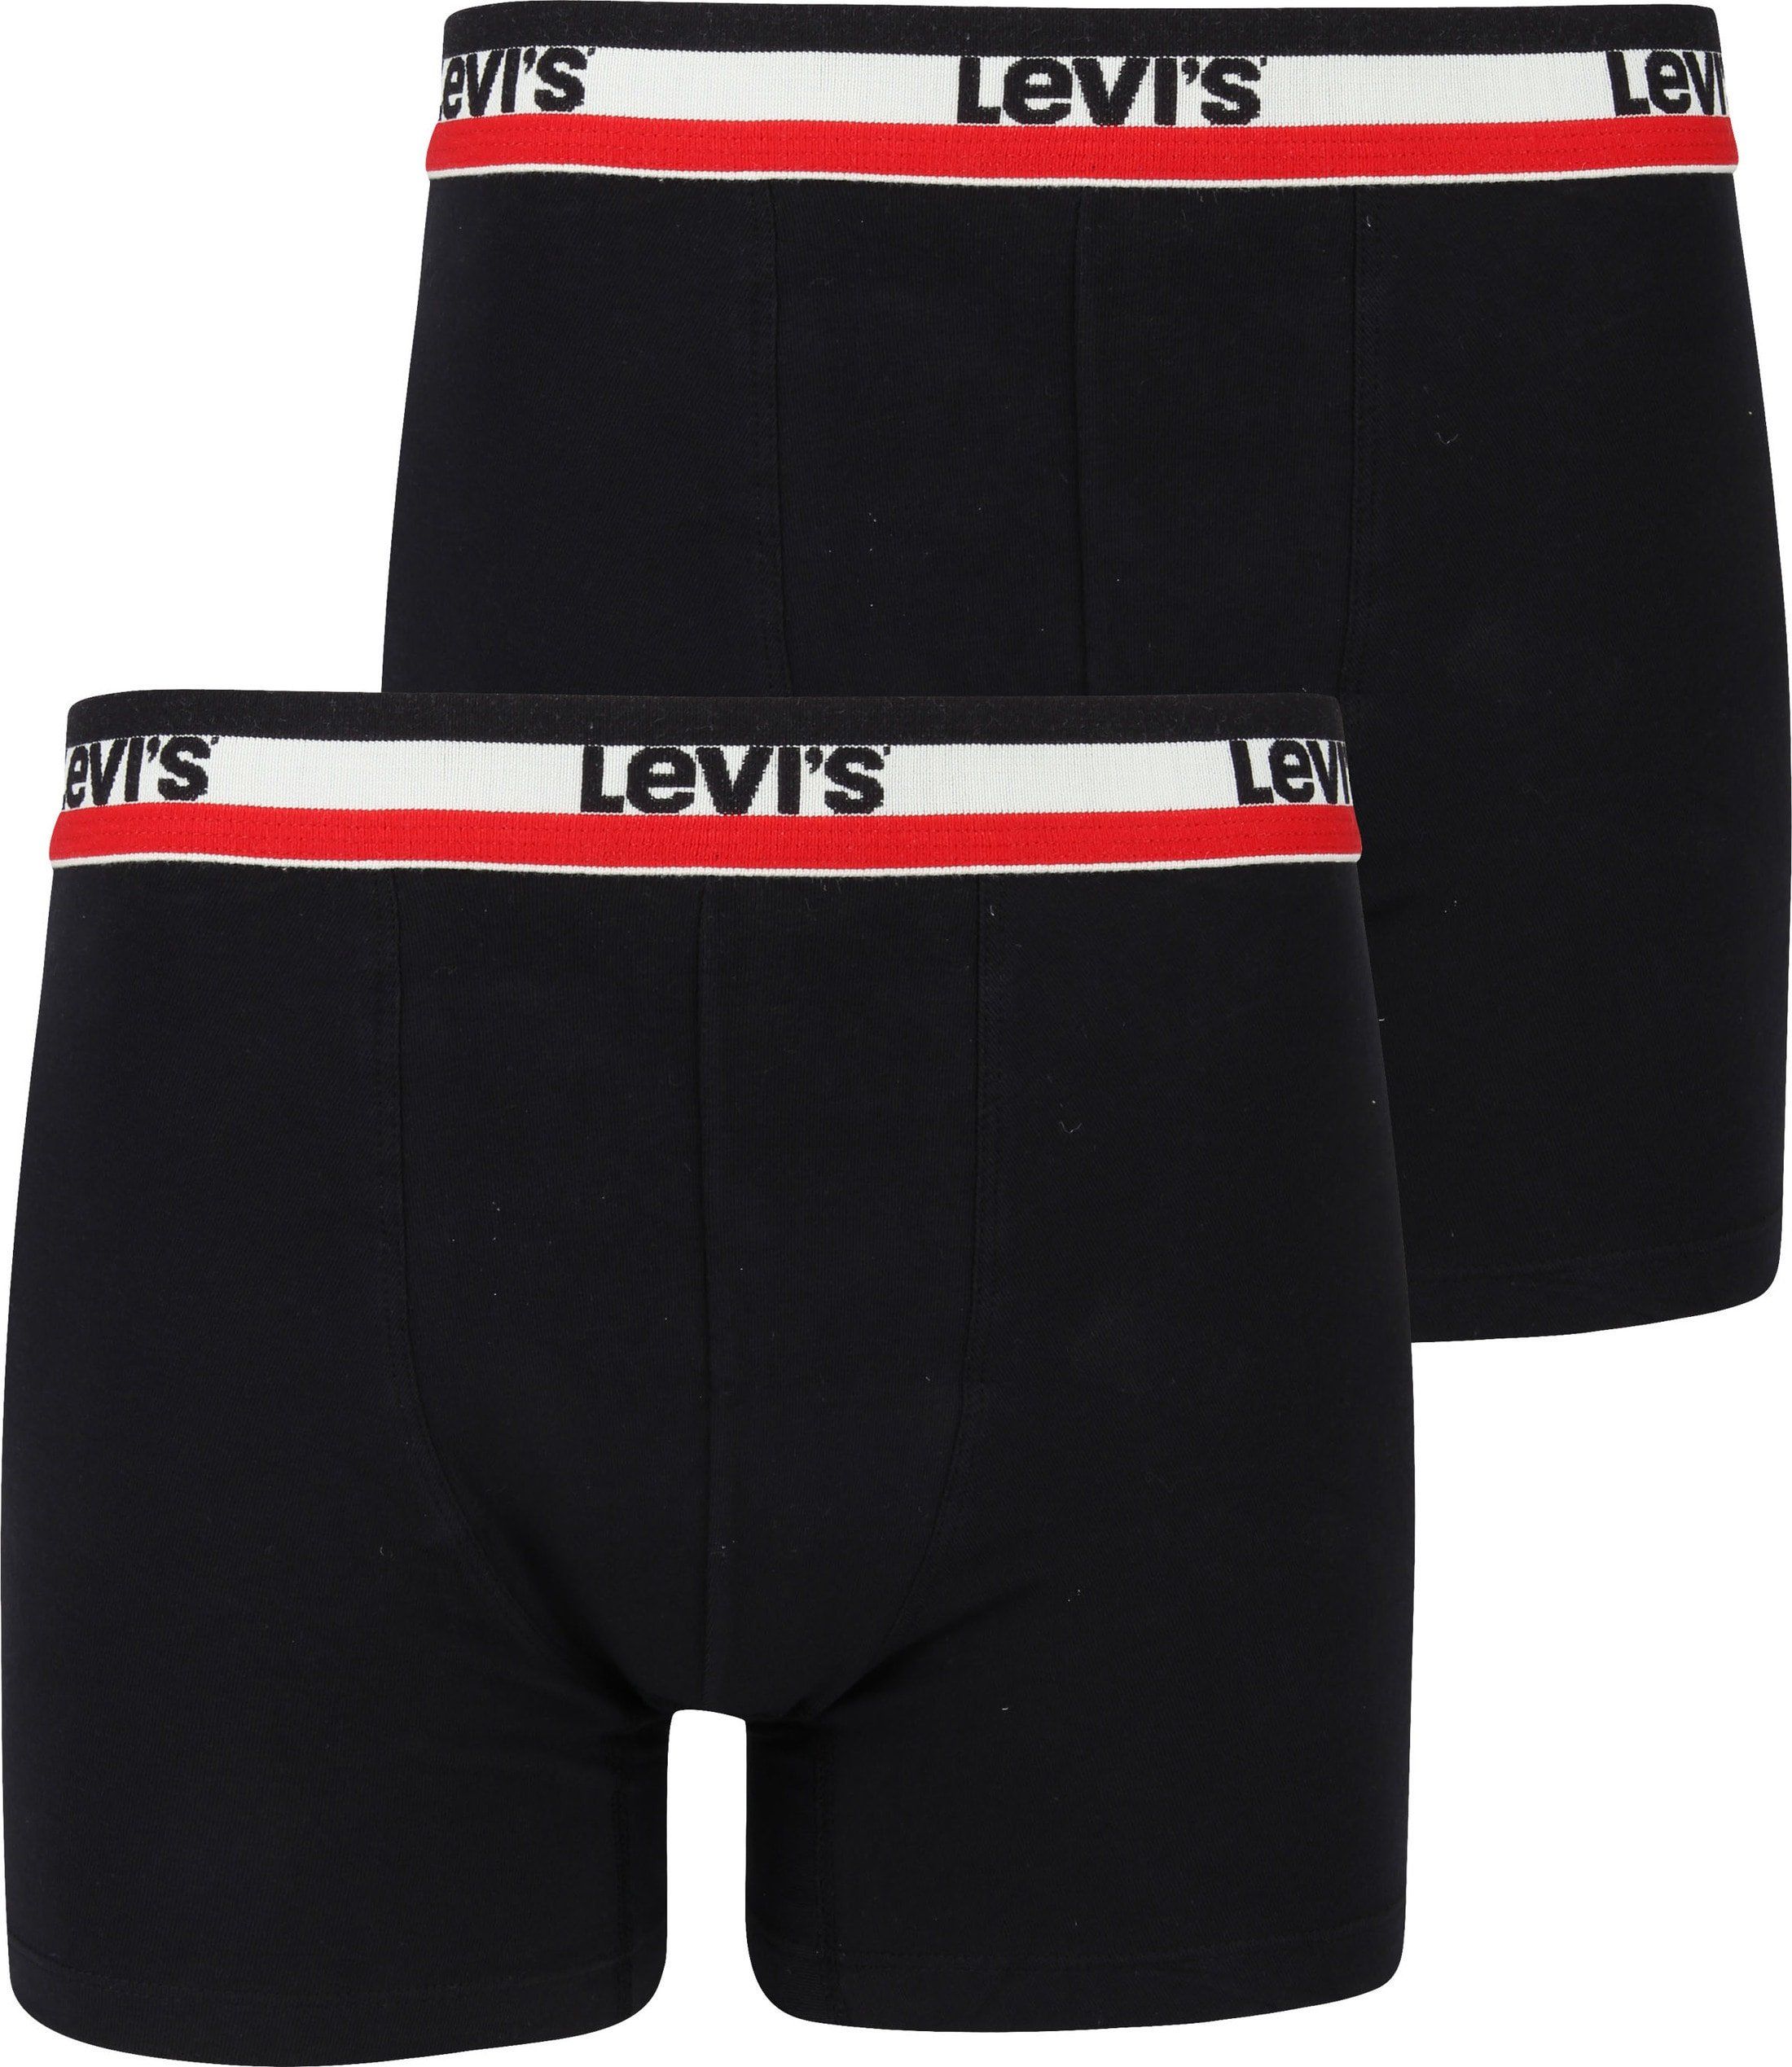 Levi's Boxer Shorts 2-Pack Black size L